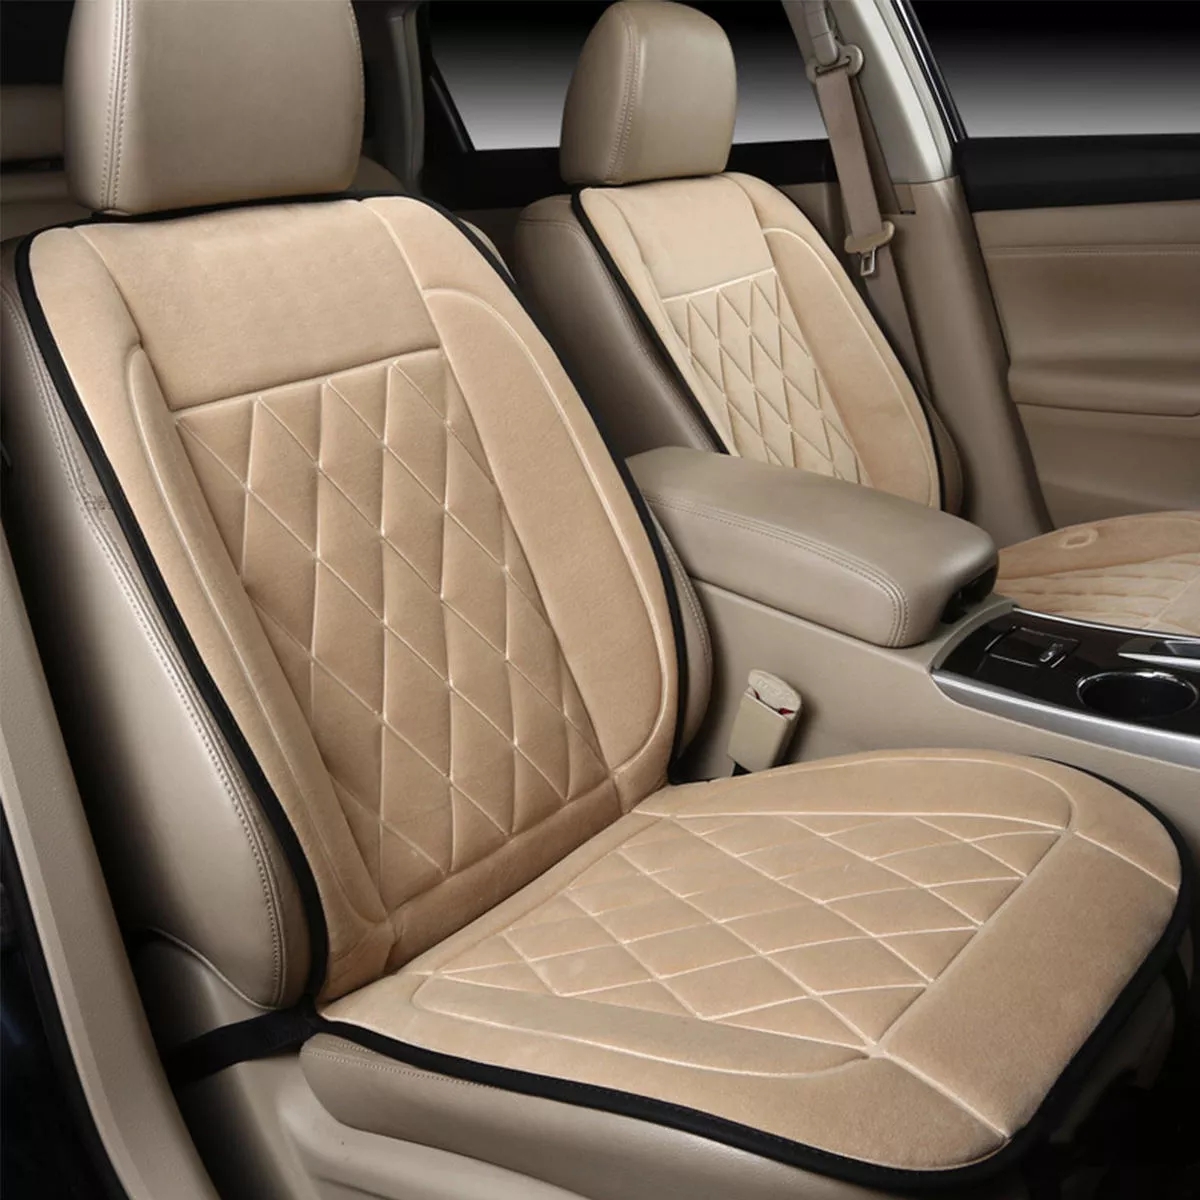 12V 24V universale riscaldata Car Seat Cuscino ammortizzatore di sede dello scaldino del riscaldatore invernale - Nero